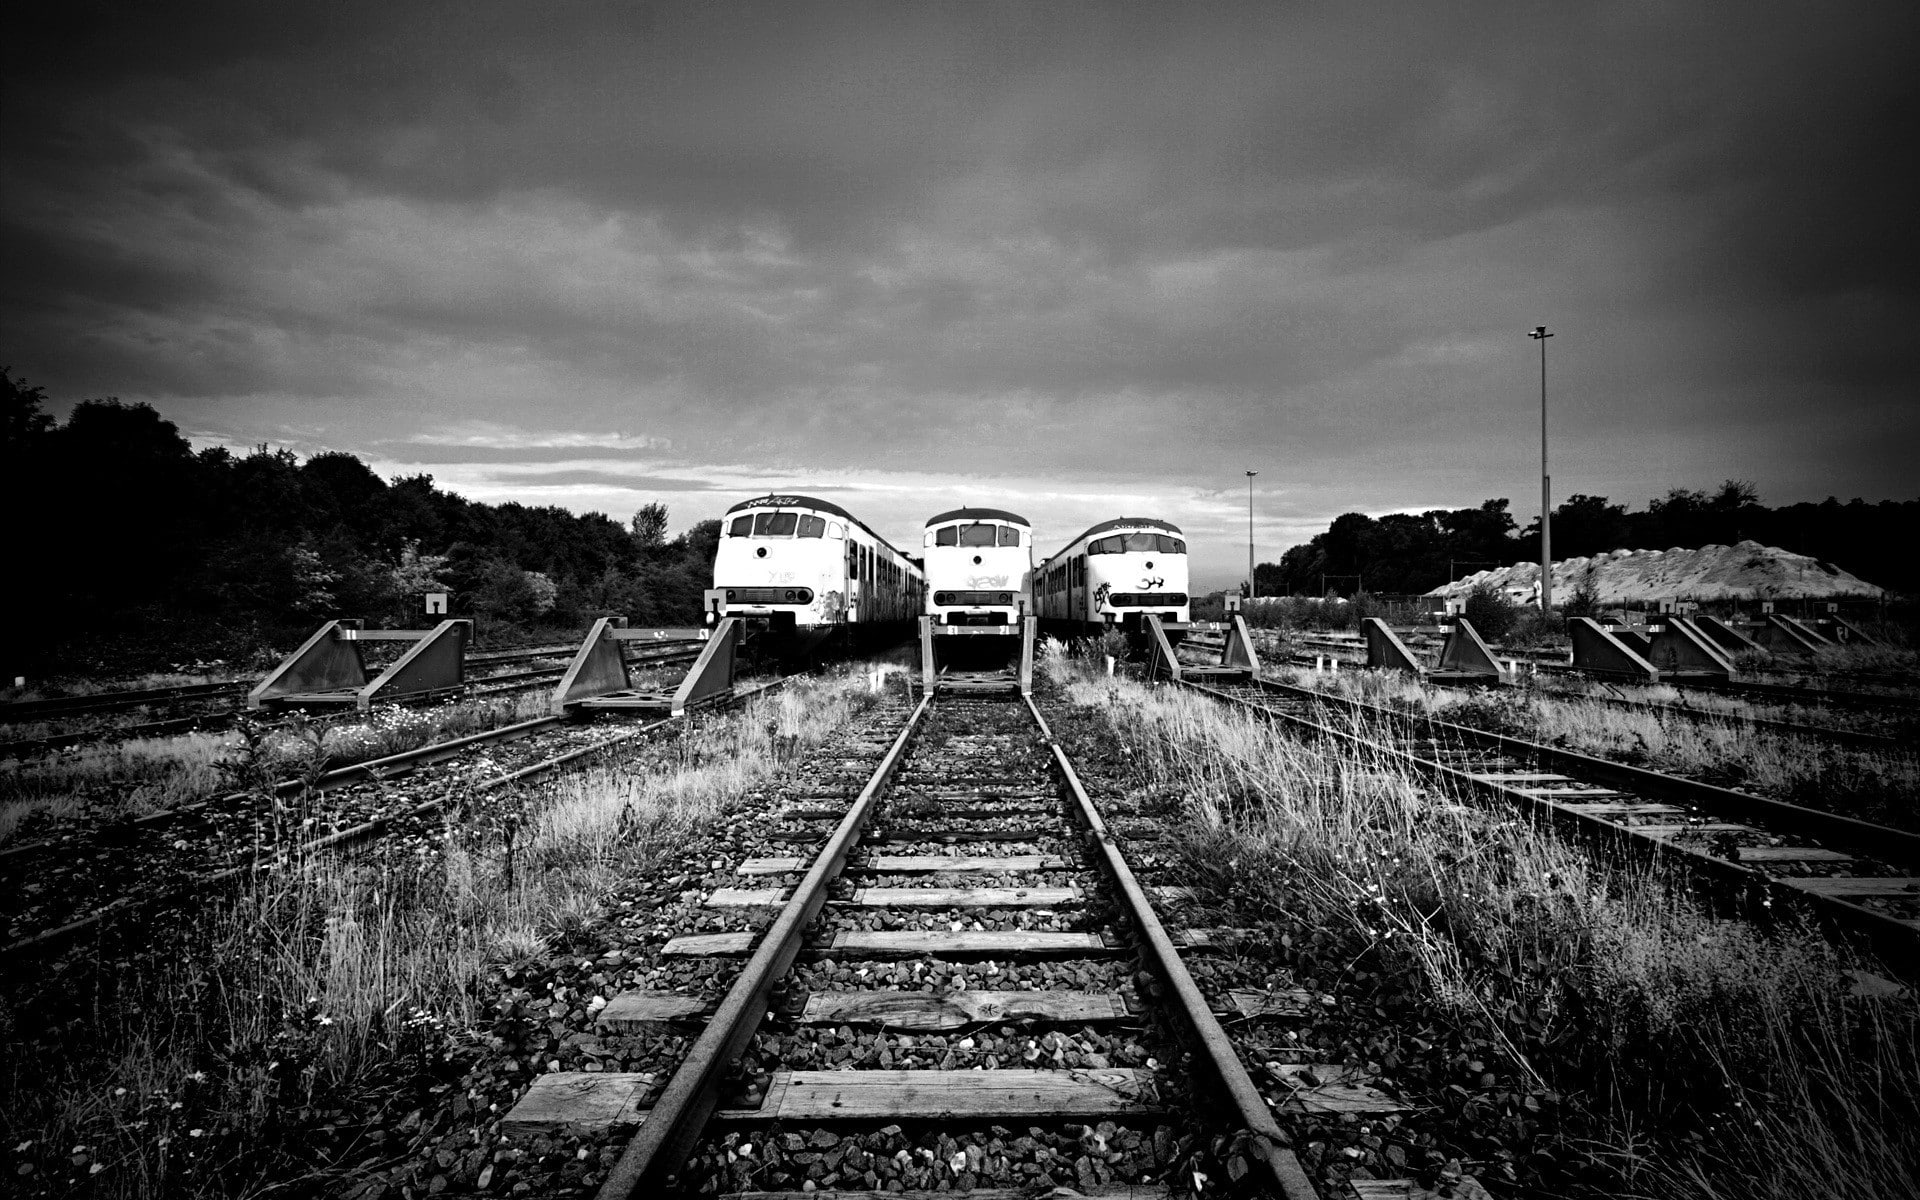 monochrome, train, vehicle